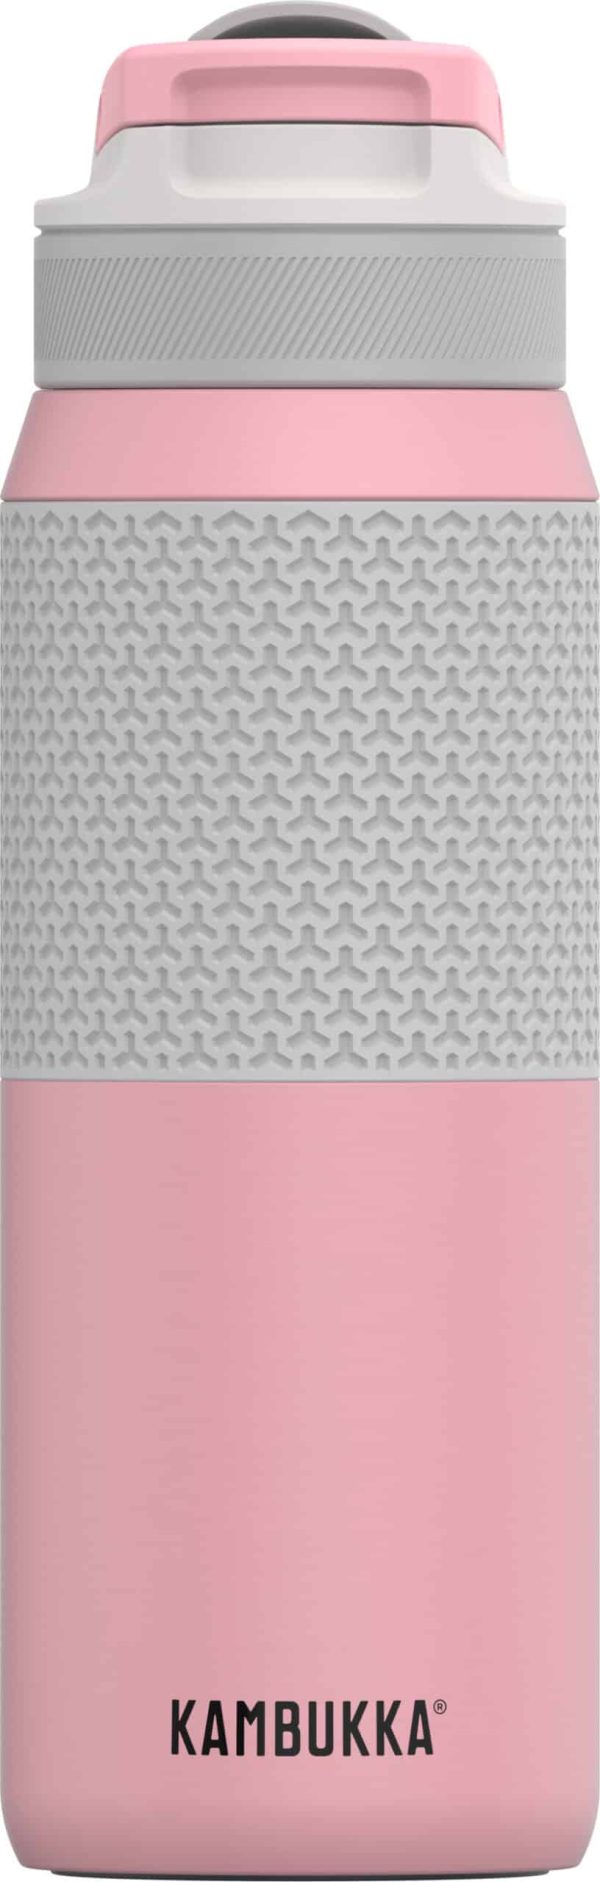 בקבוק שתיה תרמי 750 מ״ל Pink Lady Kambukka Elton Insulated